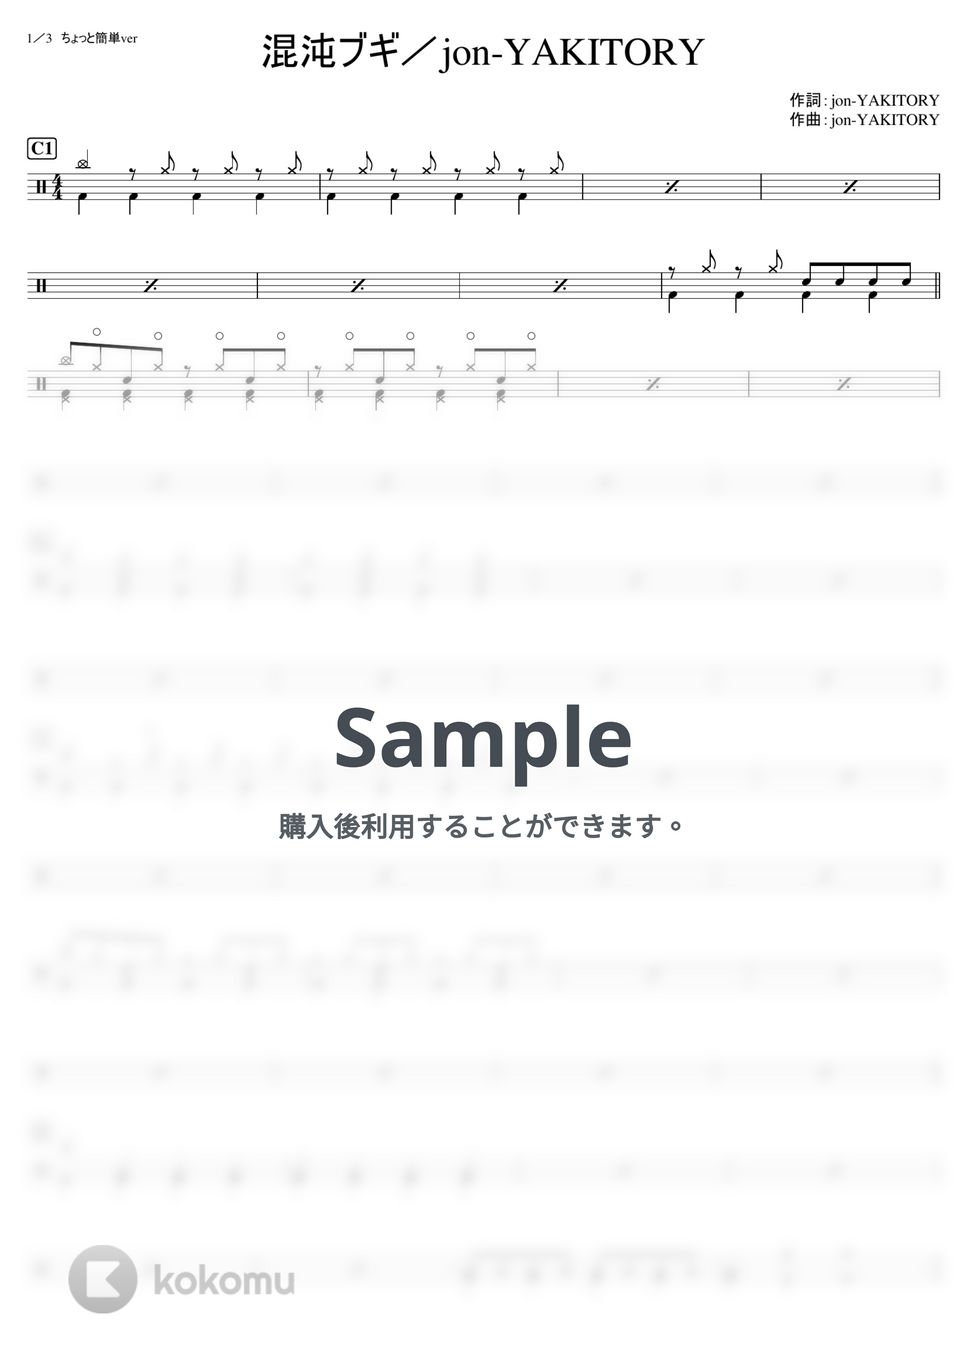 jon-YAKITORY - 混沌ブギ (中級) by kamishinjo-drum-school